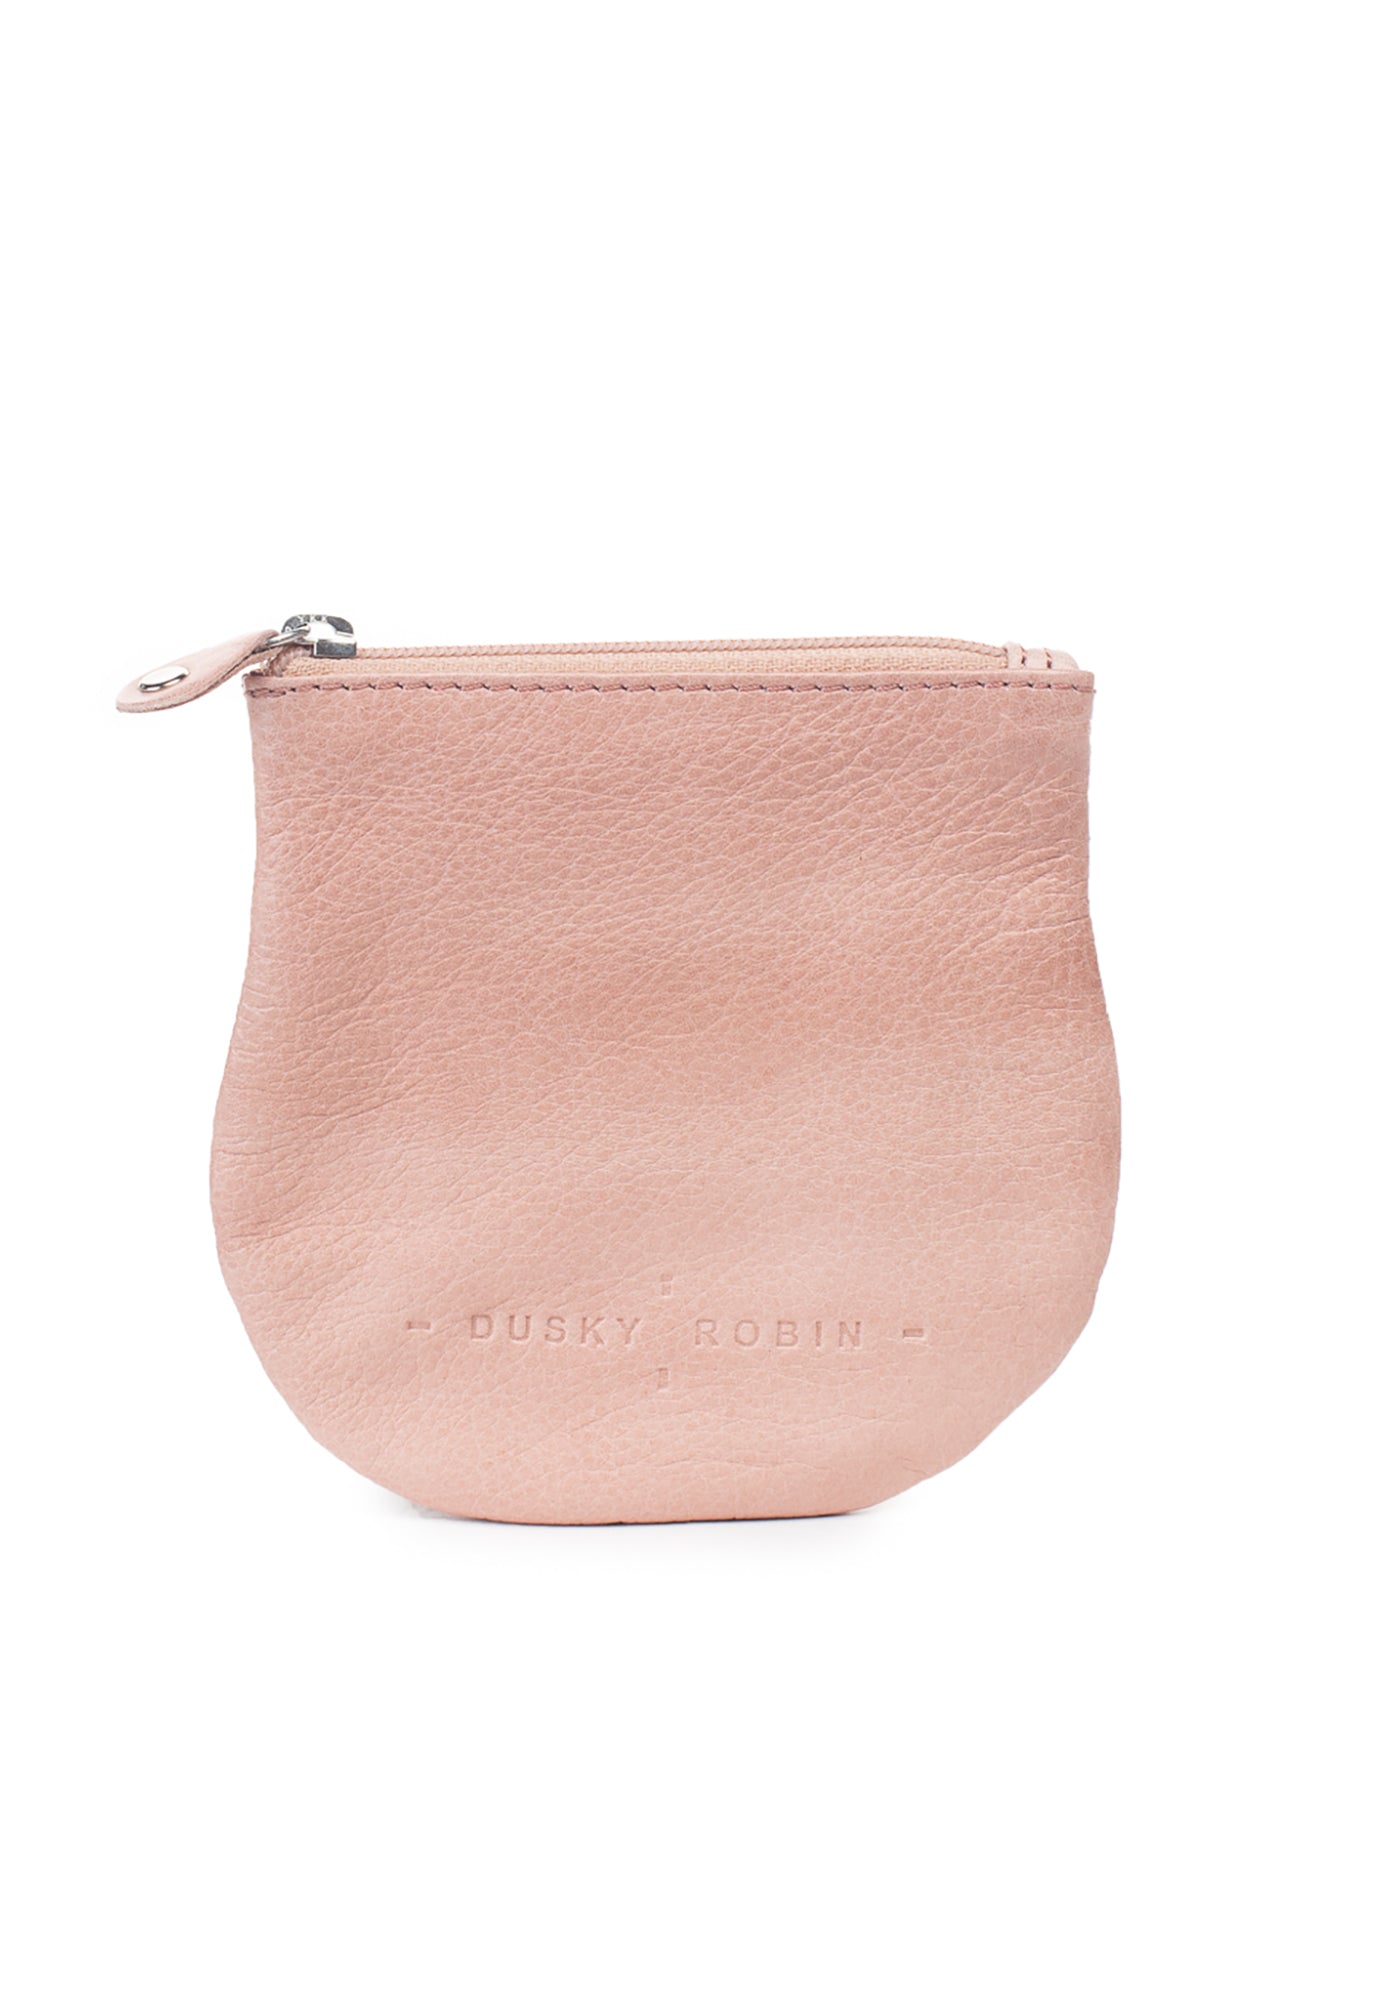 dusky robin - lilly coin purse